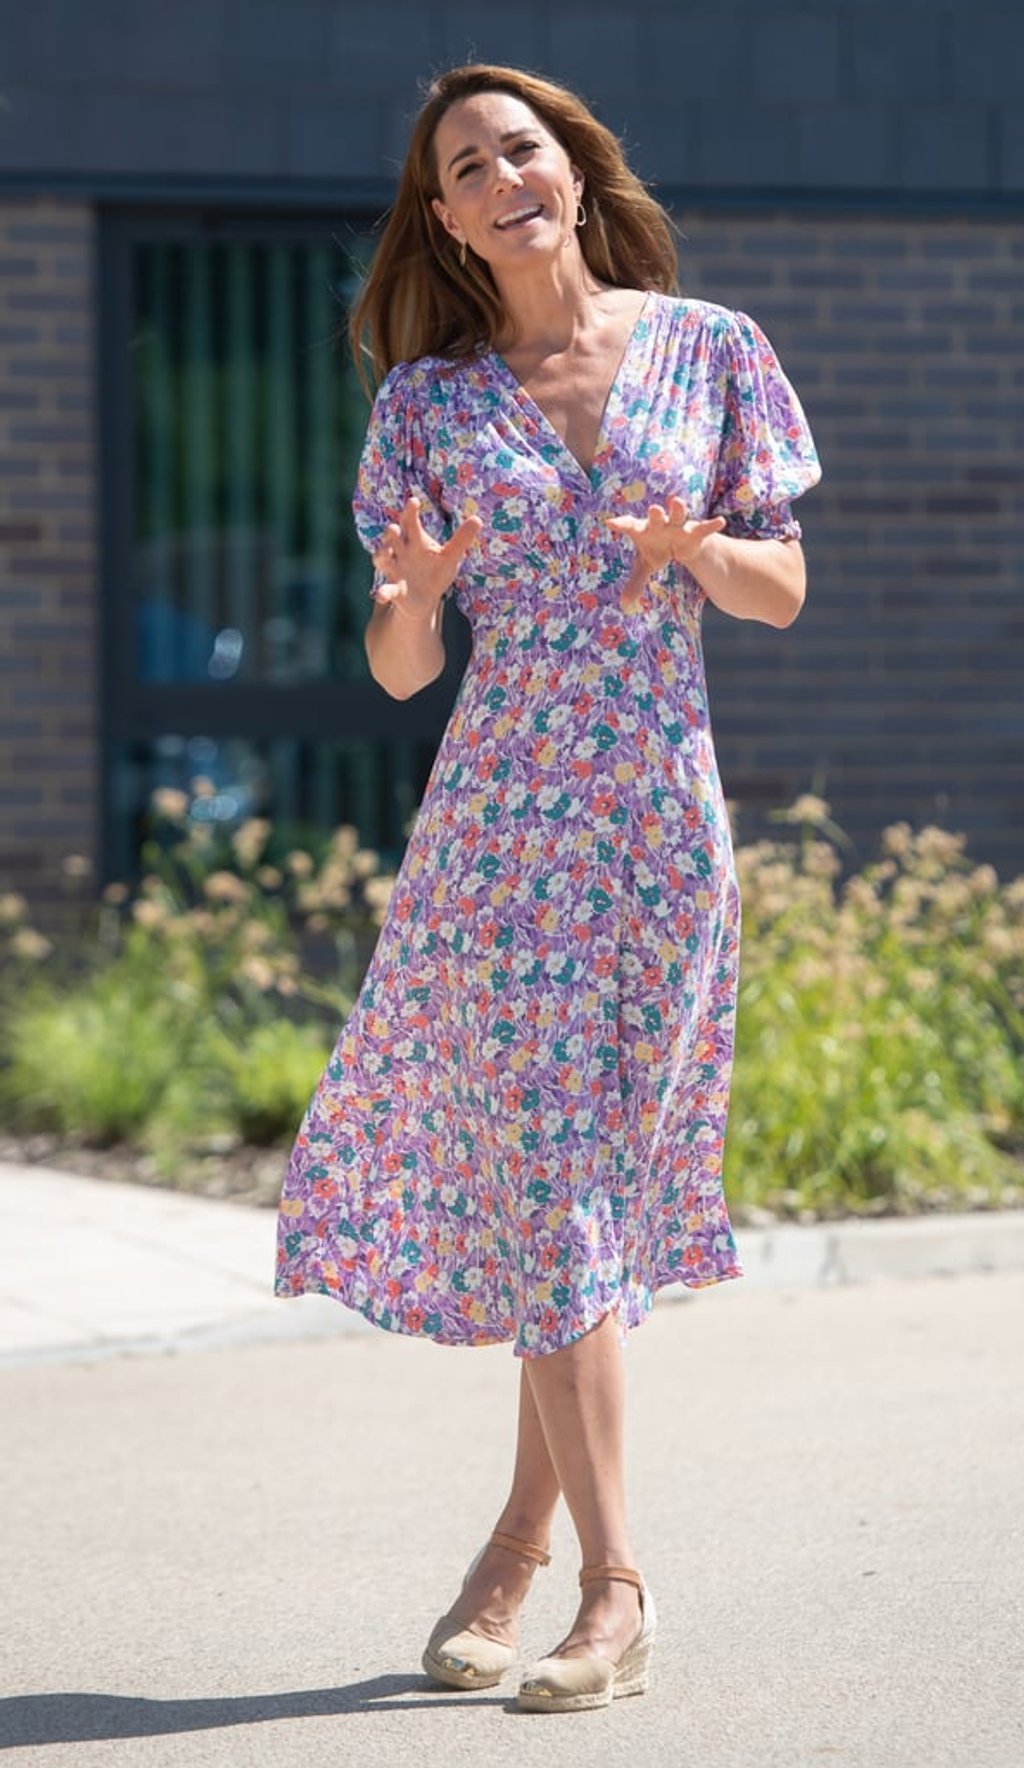 Ví dụ điển hình nhất là mẫu váy hoa hoa phảng phất màu tím nhạt mà công nương của chúng ta vừa diện cách đây vài ngày. Thiết kế tay bồng nhẹ nhàng điểm thêm phẩn cổ V kín đáo tinh tế, dáng midi dài quá gối cũng rất hợp với phong cách của phụ nữ tuổi U40 như Kate Middleton.